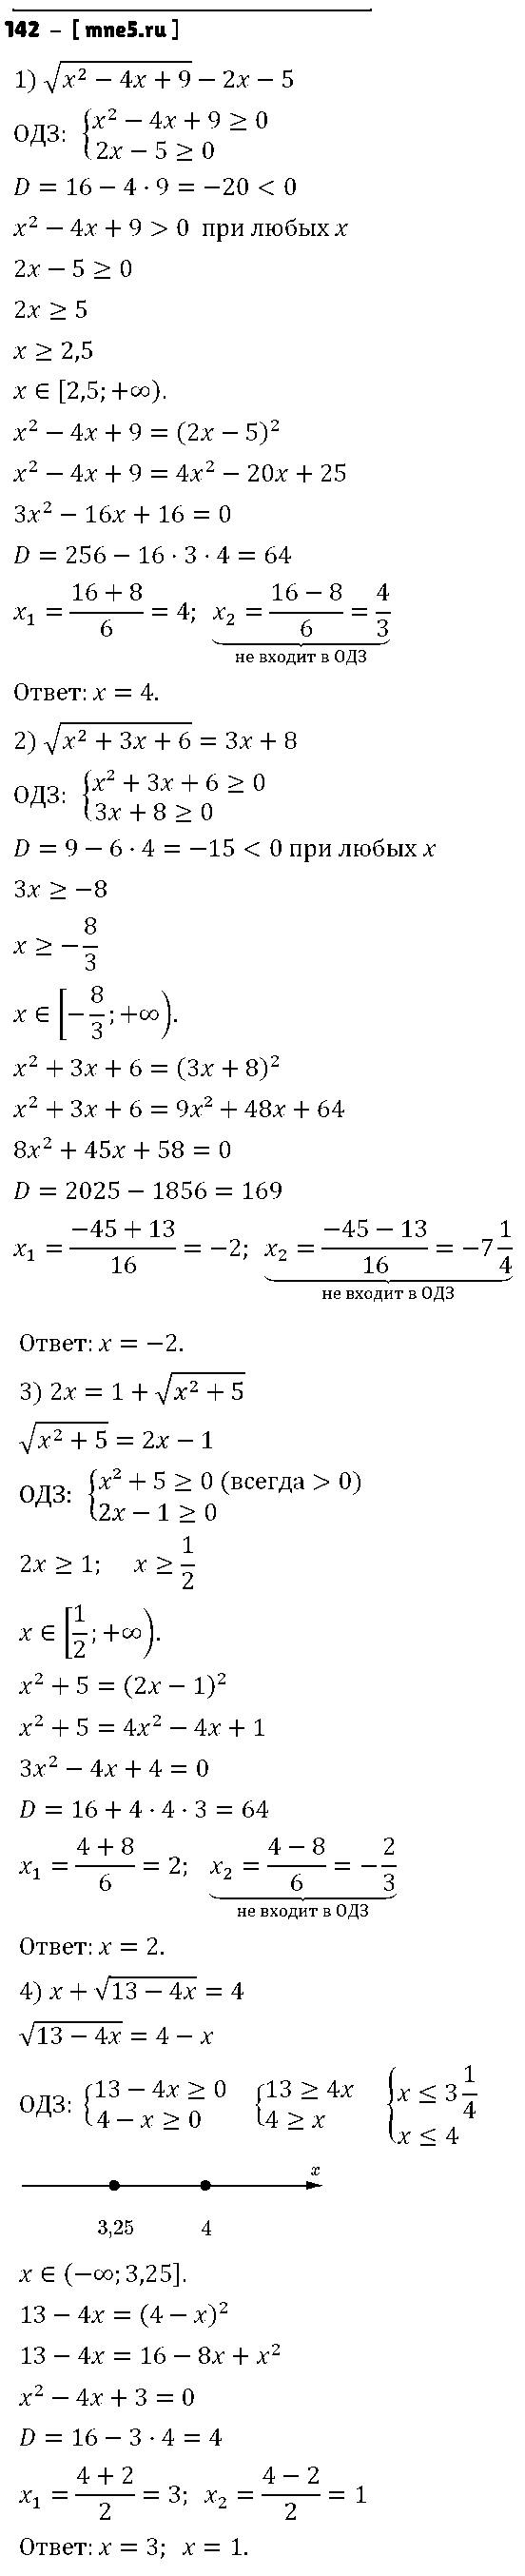 ГДЗ Алгебра 9 класс - 142